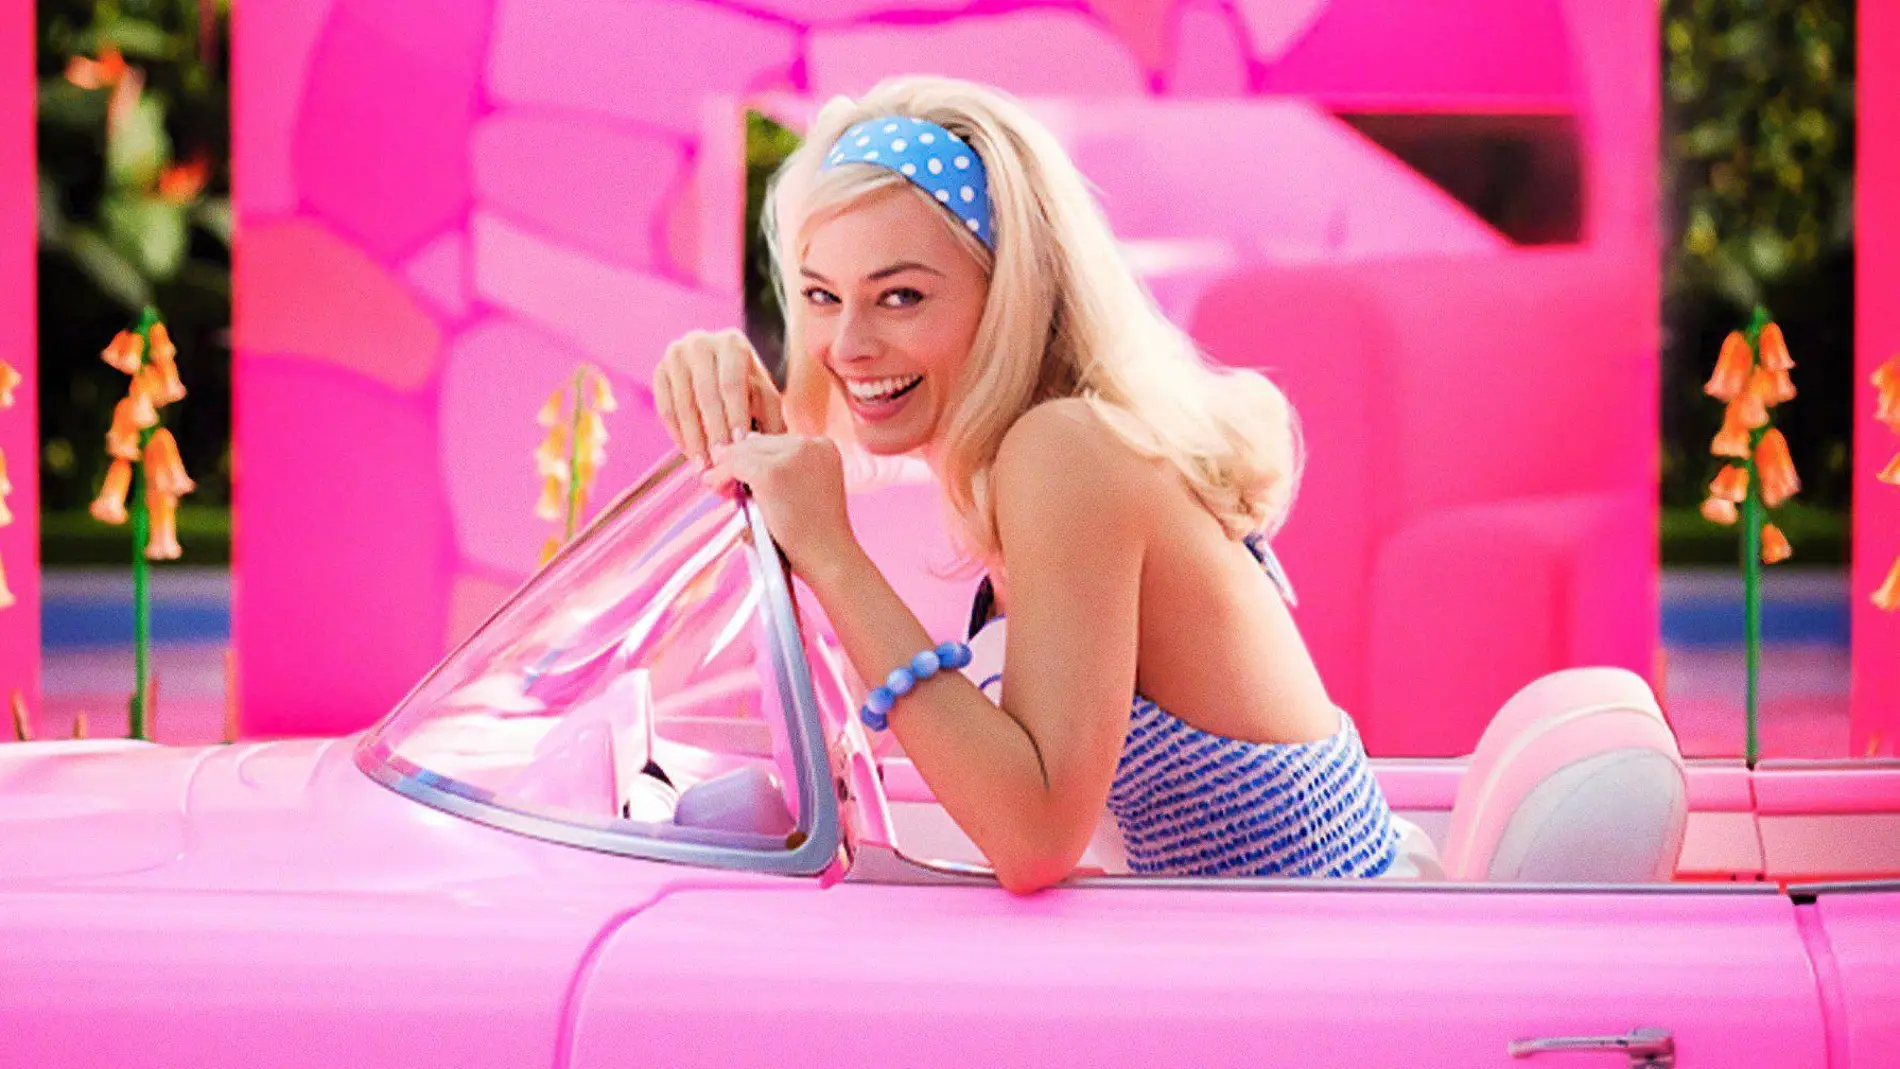 El cumpleaños a lo Barbie de Margot Robbie durante el rodaje, con sorpresa de su marido incluida